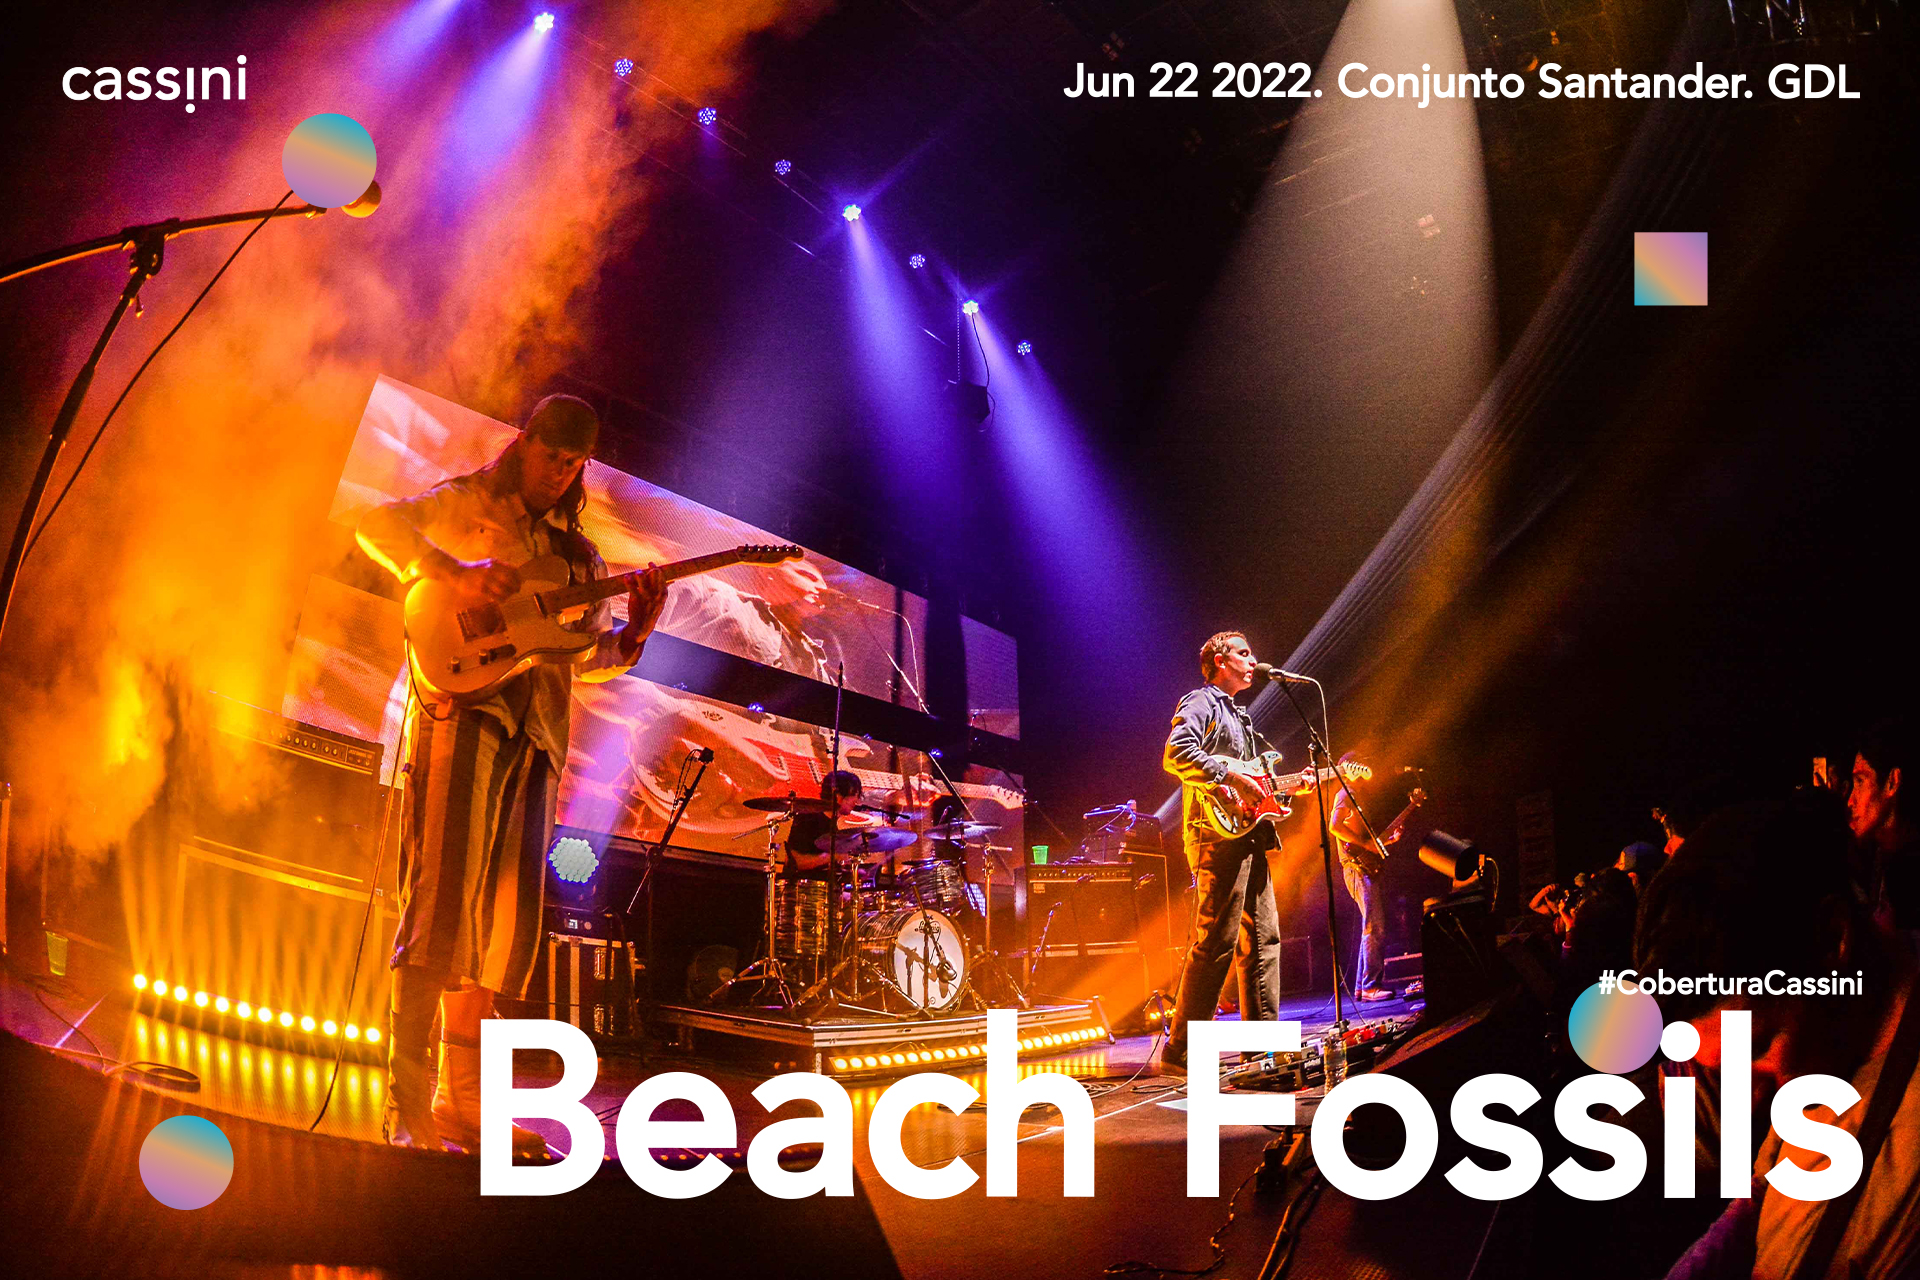 La celebración de la juventud: Fresca brisa con Beach Fossils en GDL, el inicio de un nostálgico verano